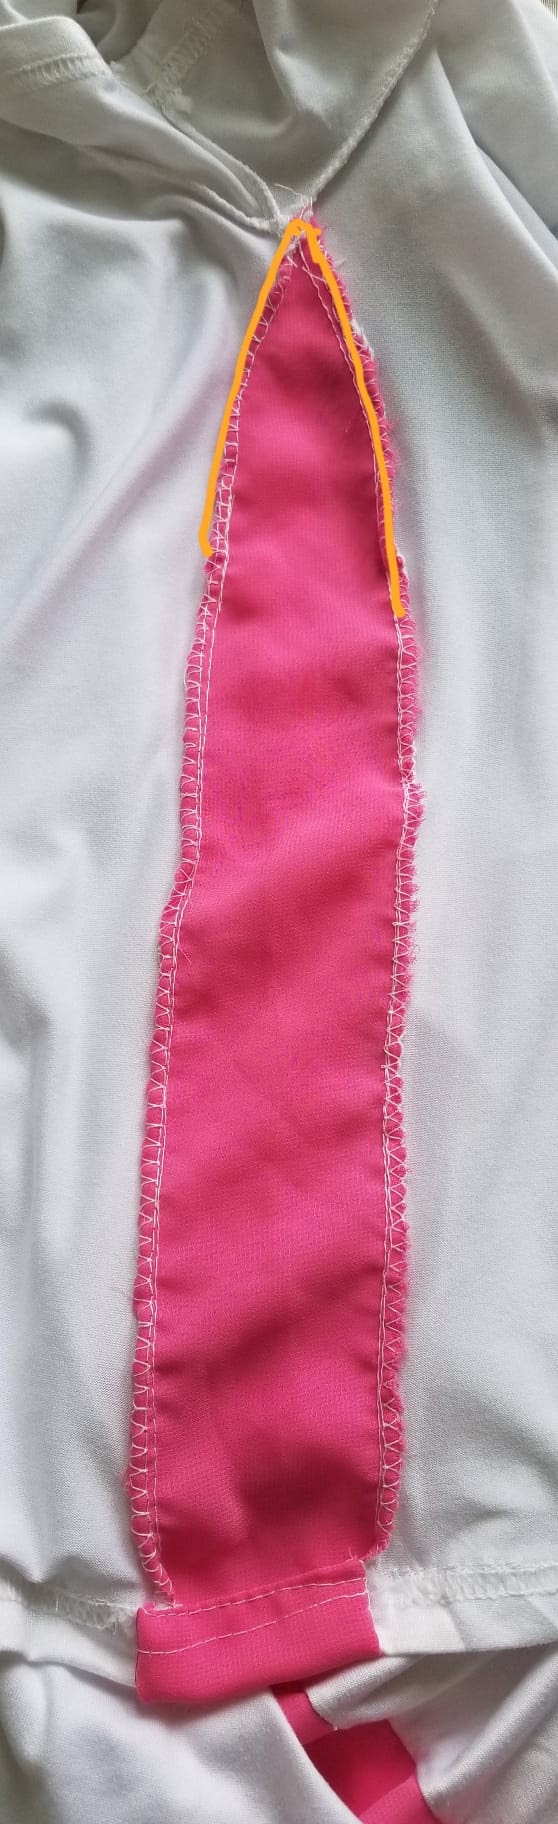 若袖子沒有可放出來的餘布，可把增寬的布條改為肥尖形狀才縫上